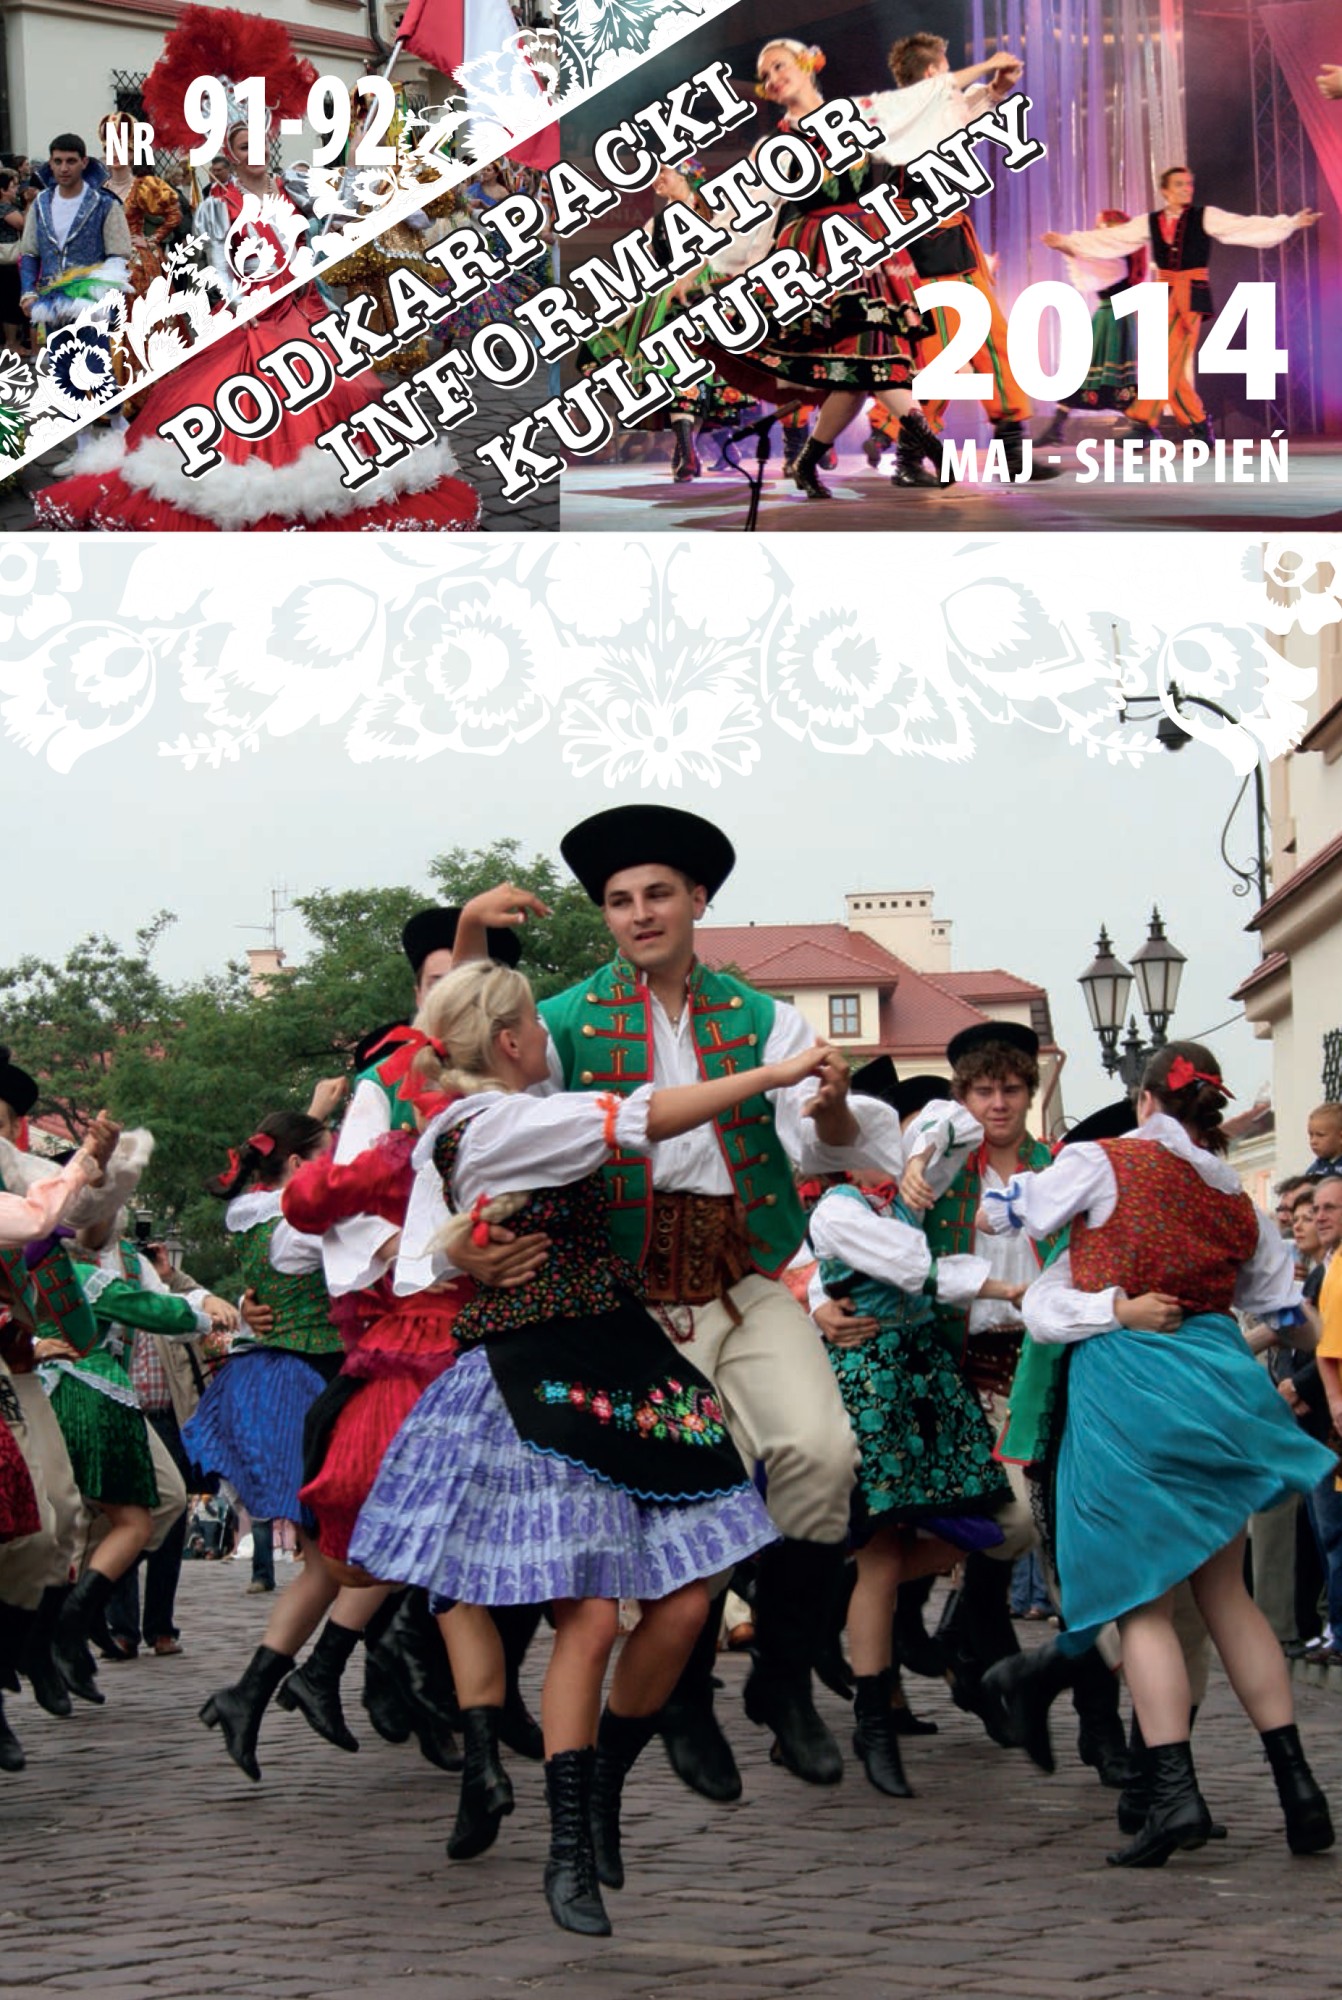 zdjęcie okładki czasopisma - Podkarpacki Informator Kulturalny. 2014, nr 91-92 (maj-sierpień)